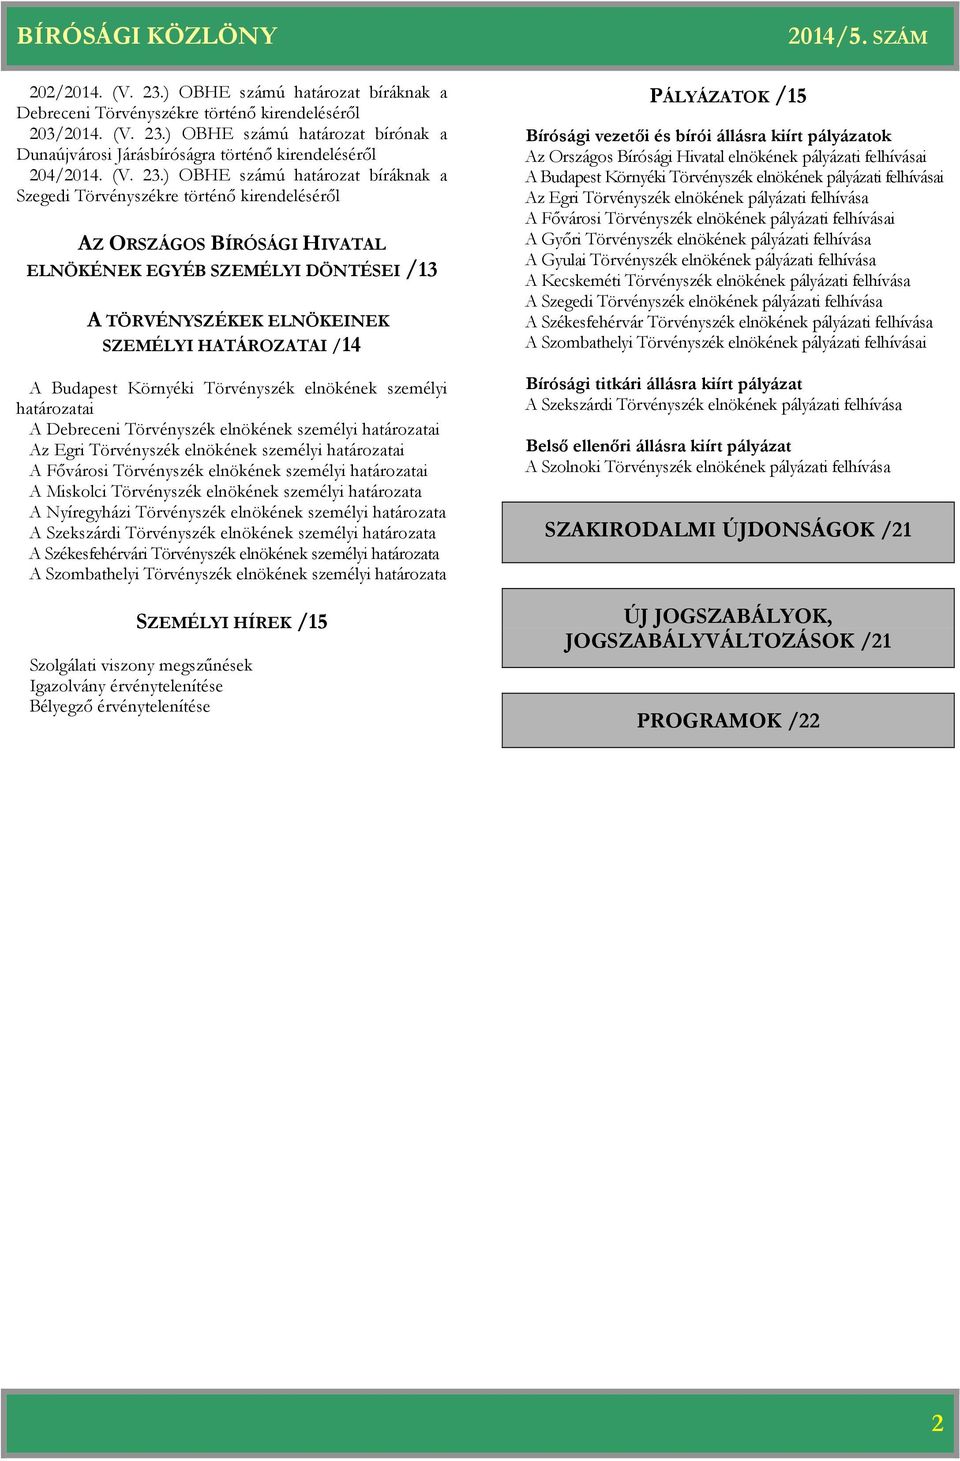 ) OBHE számú bírónak a Dunaújvárosi Járásbíróságra történő kirendeléséről 204/2014. (V. 23.